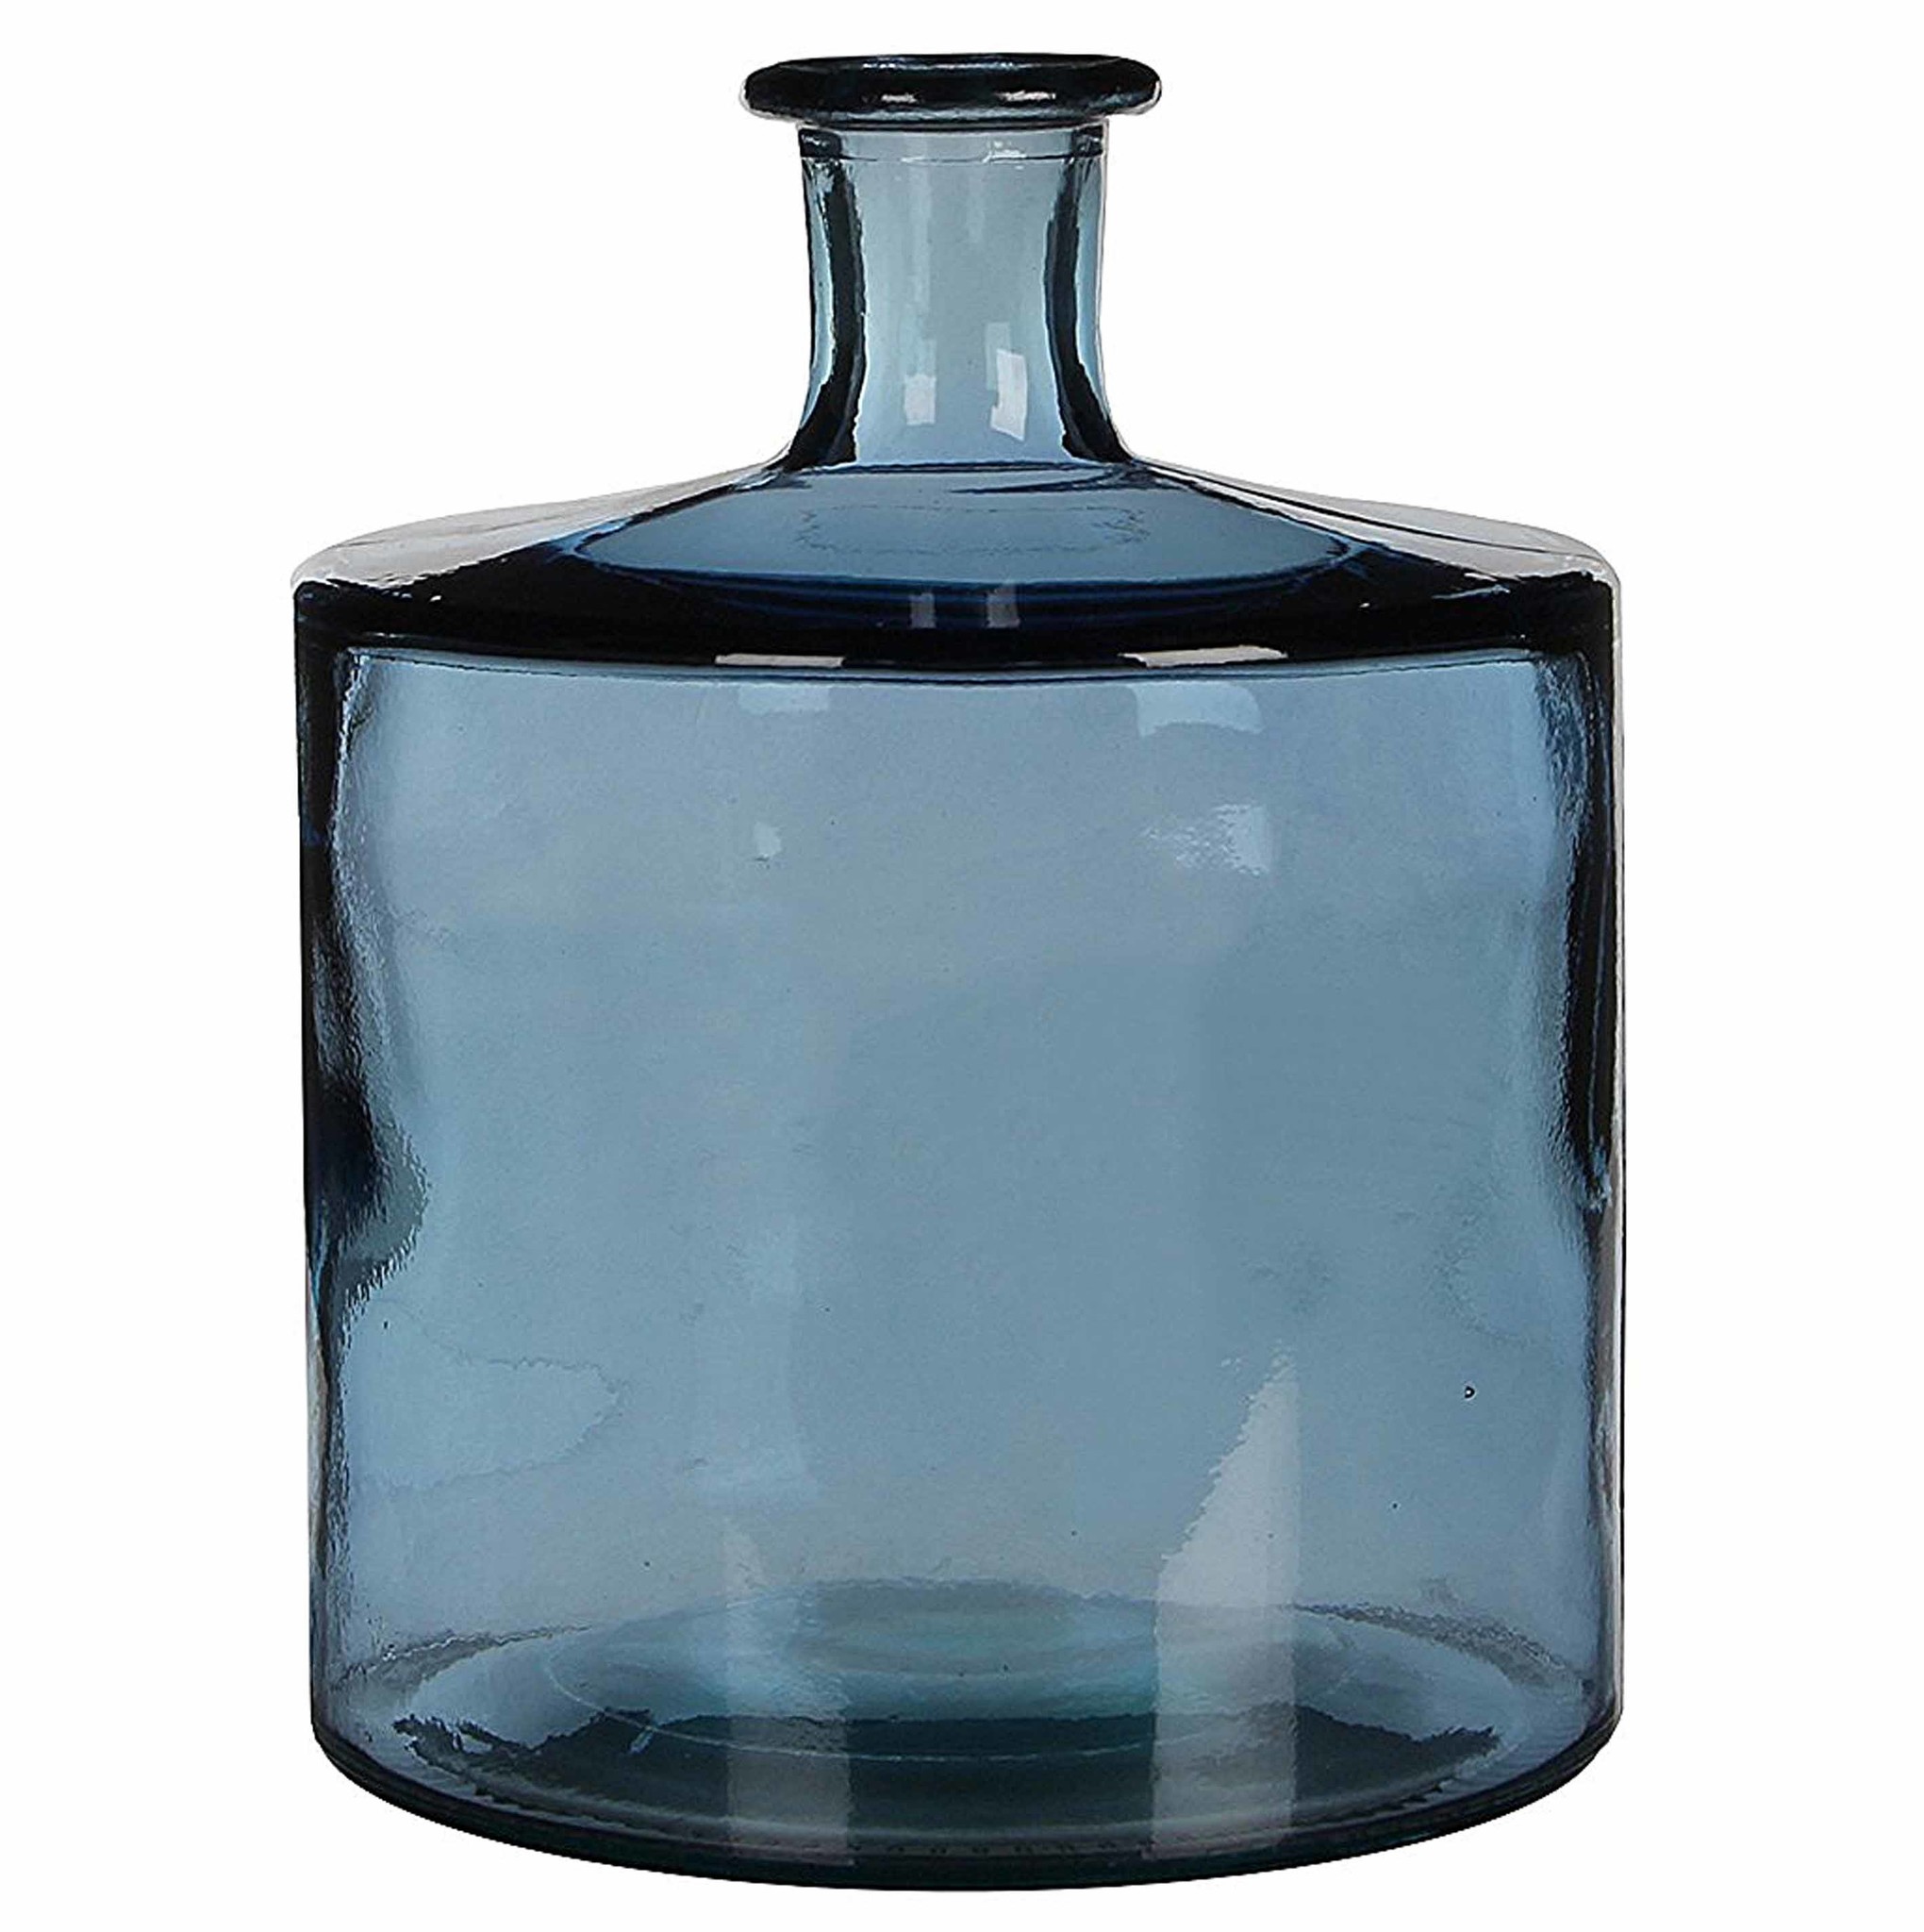 dak Nodig hebben Monarch Shop Handgemaakte glazen fles Guan, Blauw glas, H44cm / D35cm Online -  Plant New Day